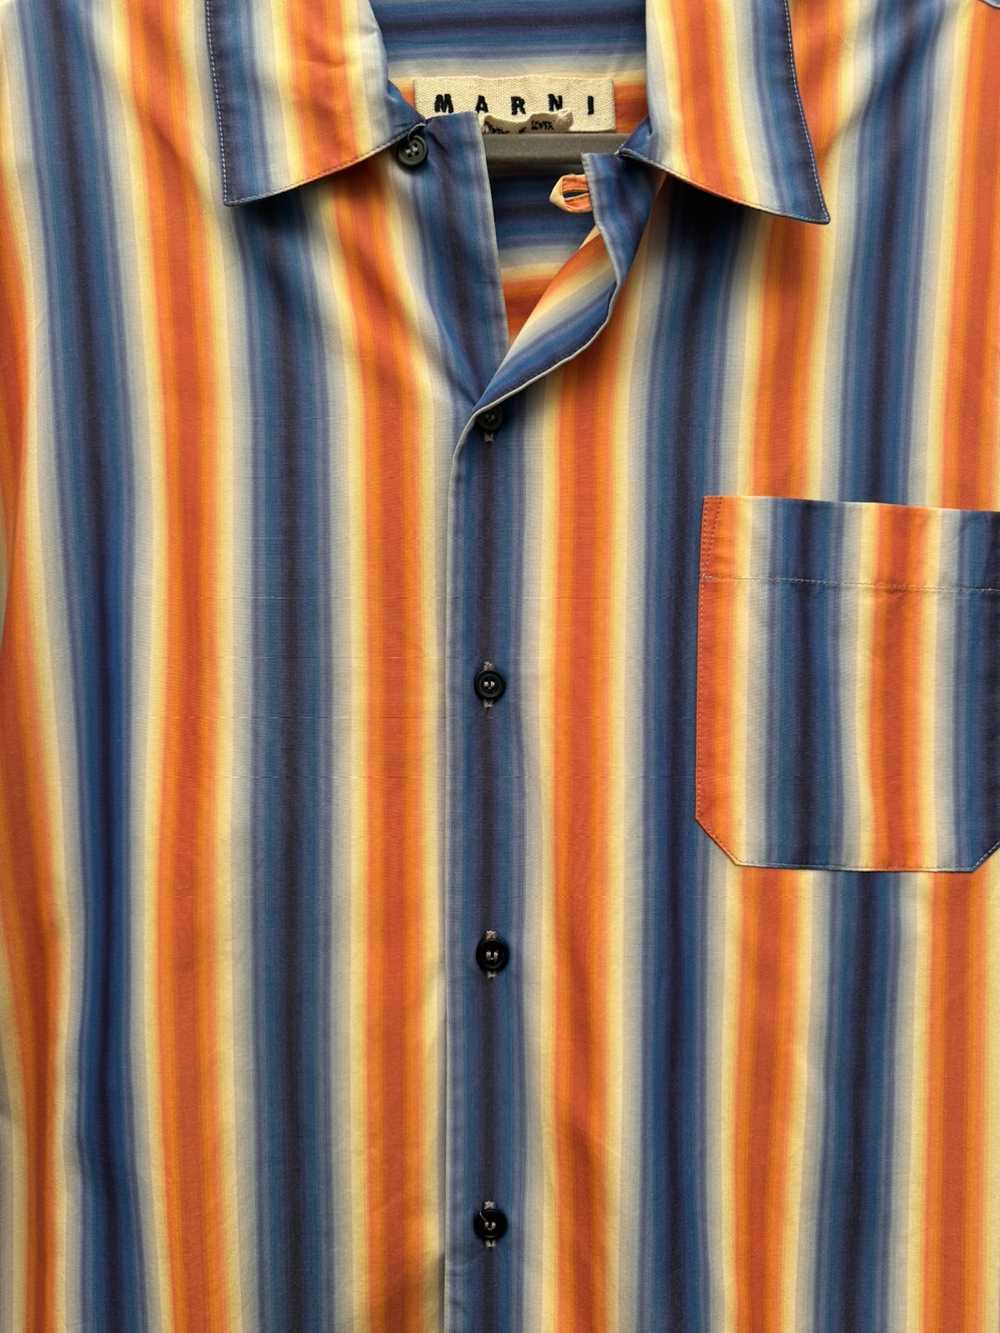 Marni MARNI striped bowling Shirt SS2019 - image 2